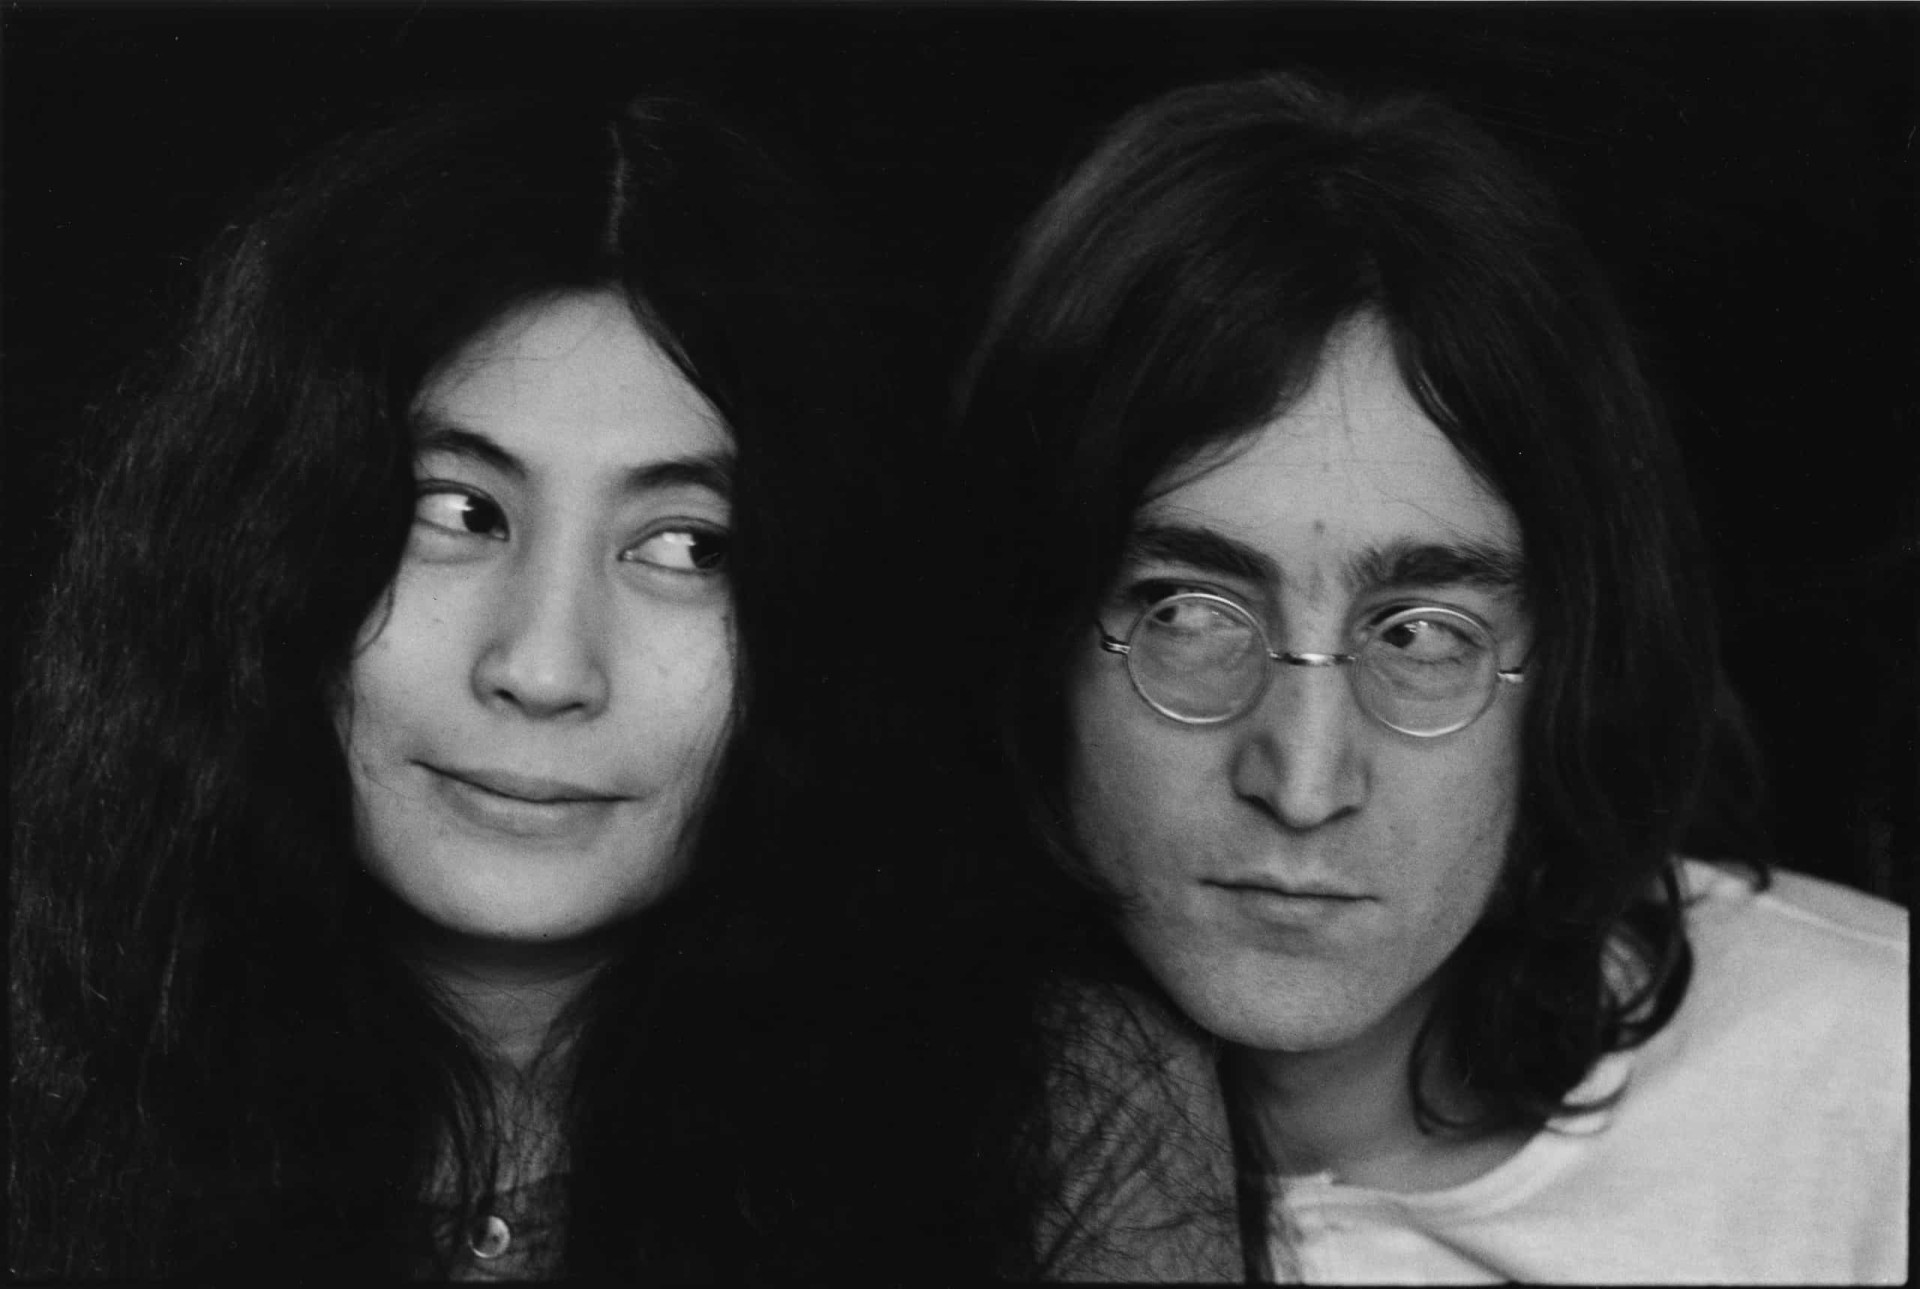 <p><a href="https://www.starsinsider.com/fr/people/454235/yoko-ono-la-femme-la-plus-critiquee-de-la-culture-pop">Yoko Ono</a>, l'épouse de John Lennon, étant son unique héritière, c'est elle qui a reçu les redevances découlant de la popularité continue de la chanson. "Yesterday" est l'une des chansons les plus écoutées de l'histoire de la radio et a rapporté environ 30 millions de dollars.</p>